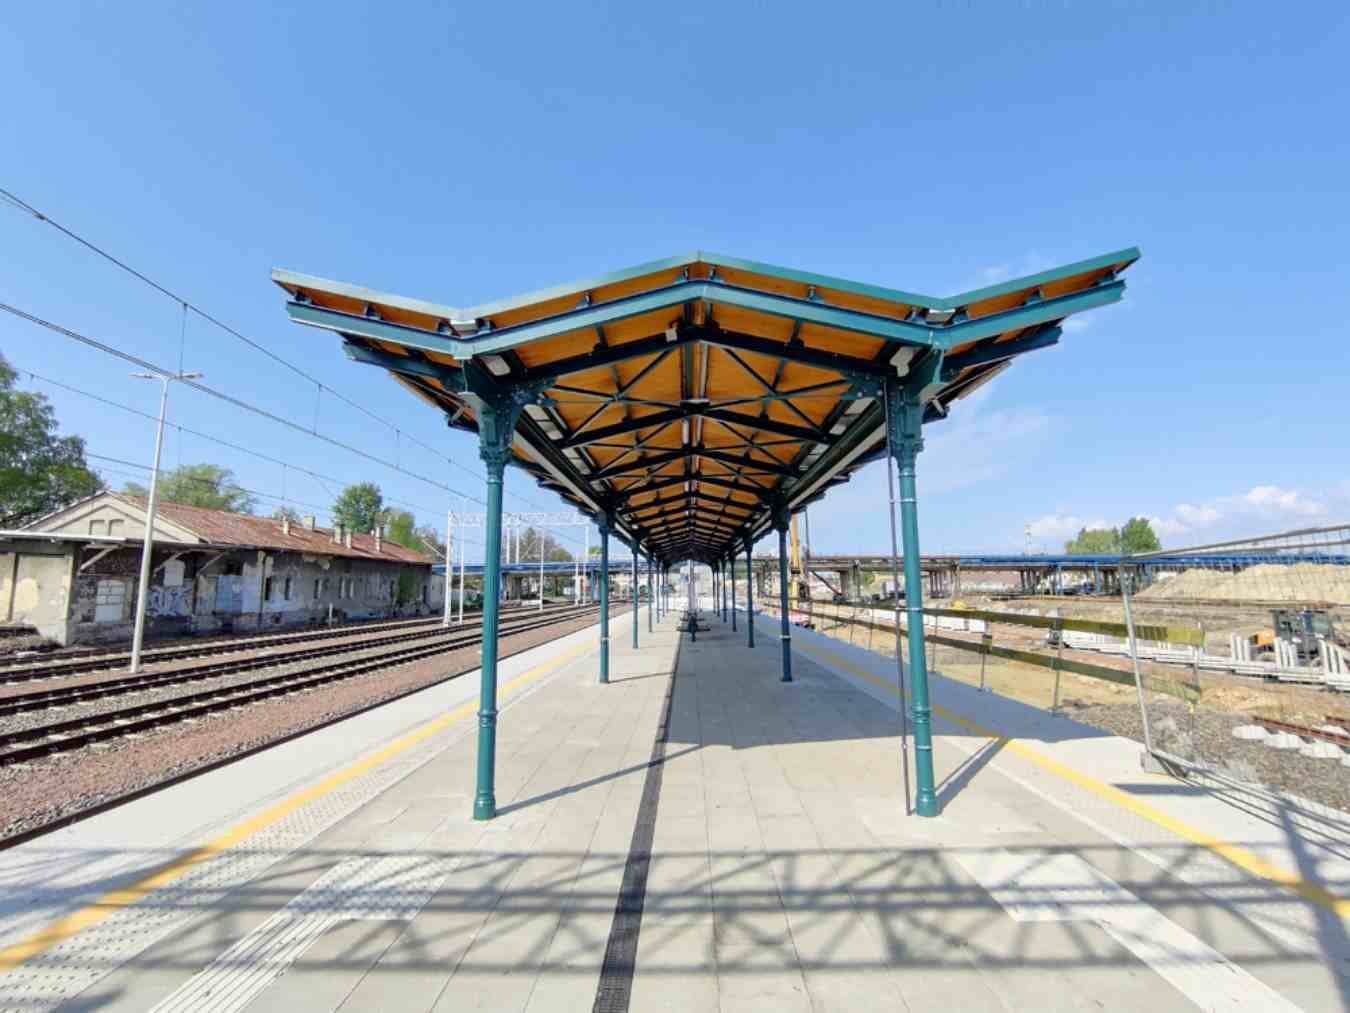 Zabytkowa wiata na stacji kolejowej odrestaurowana